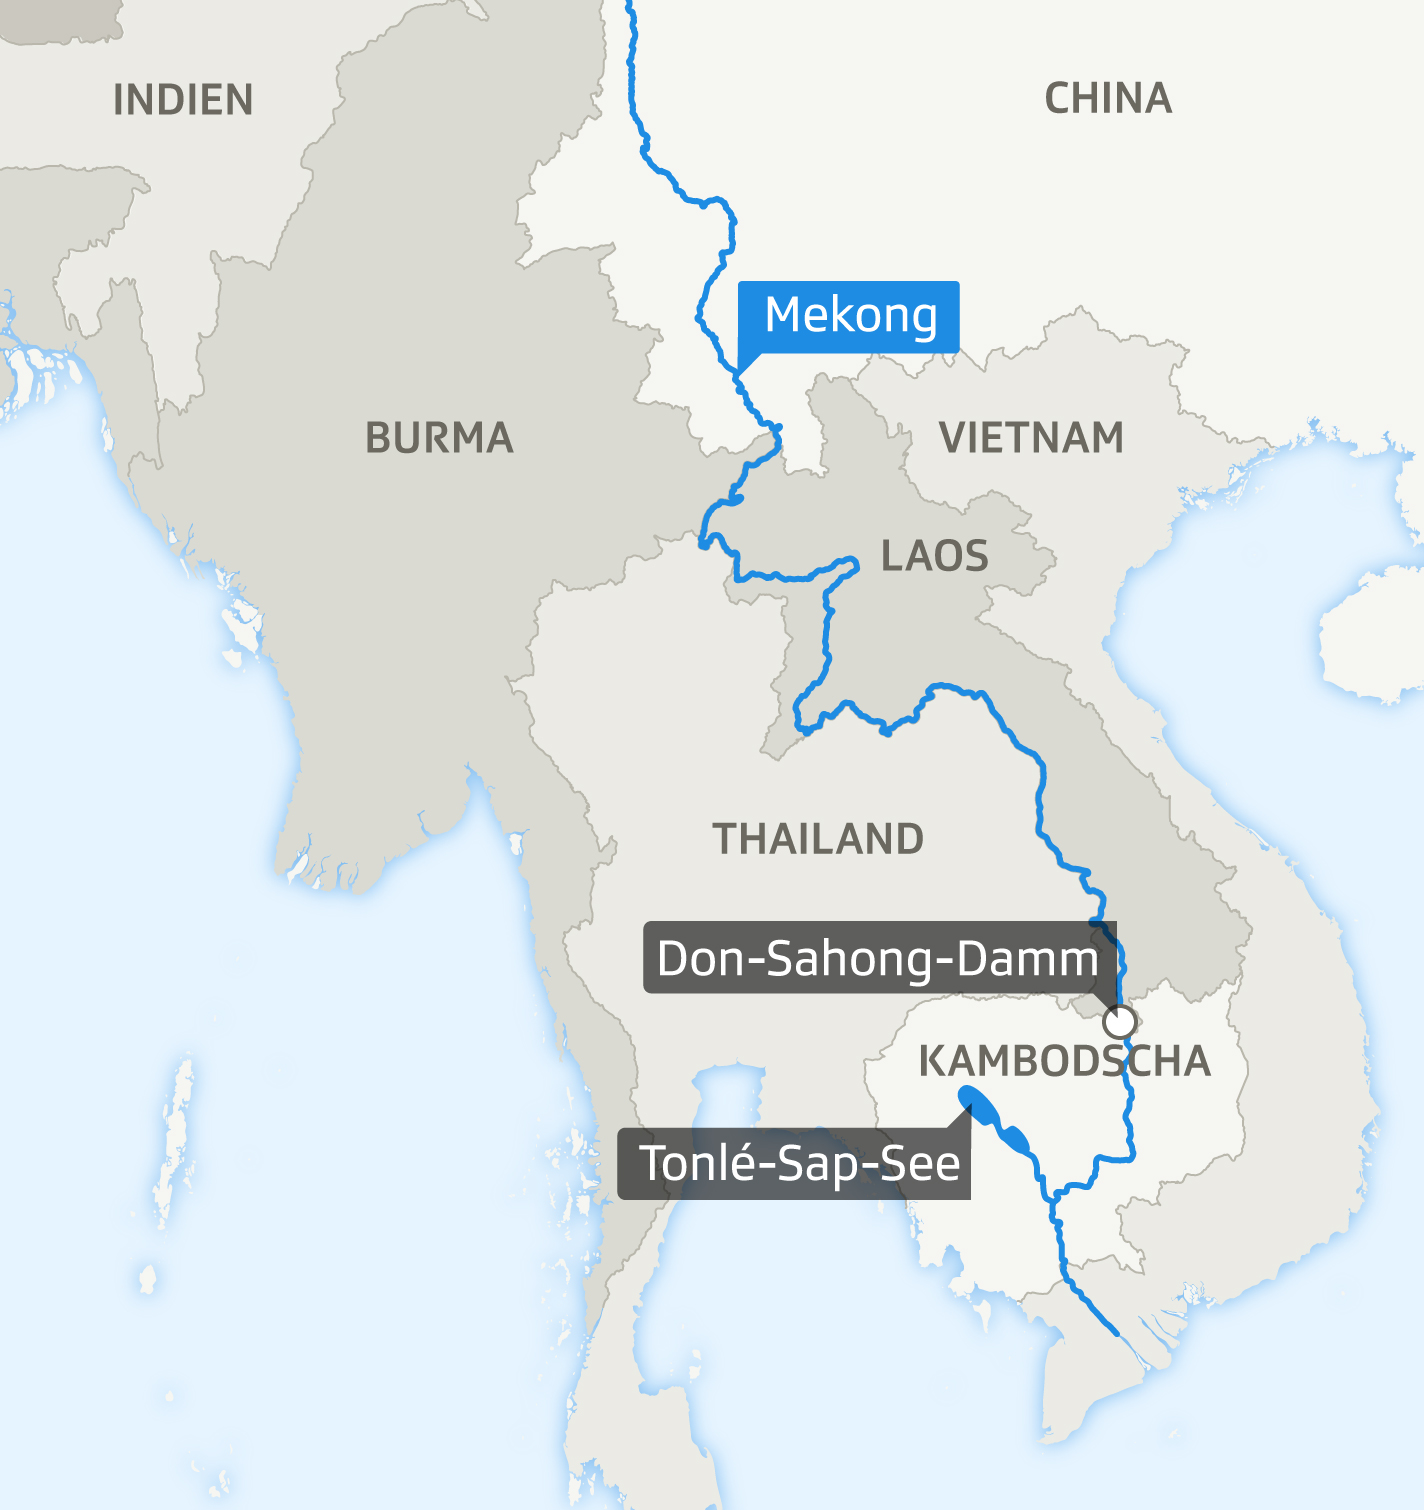 160 geplante Staudämme - Den Mekong-Fischern droht eine Katastrophe